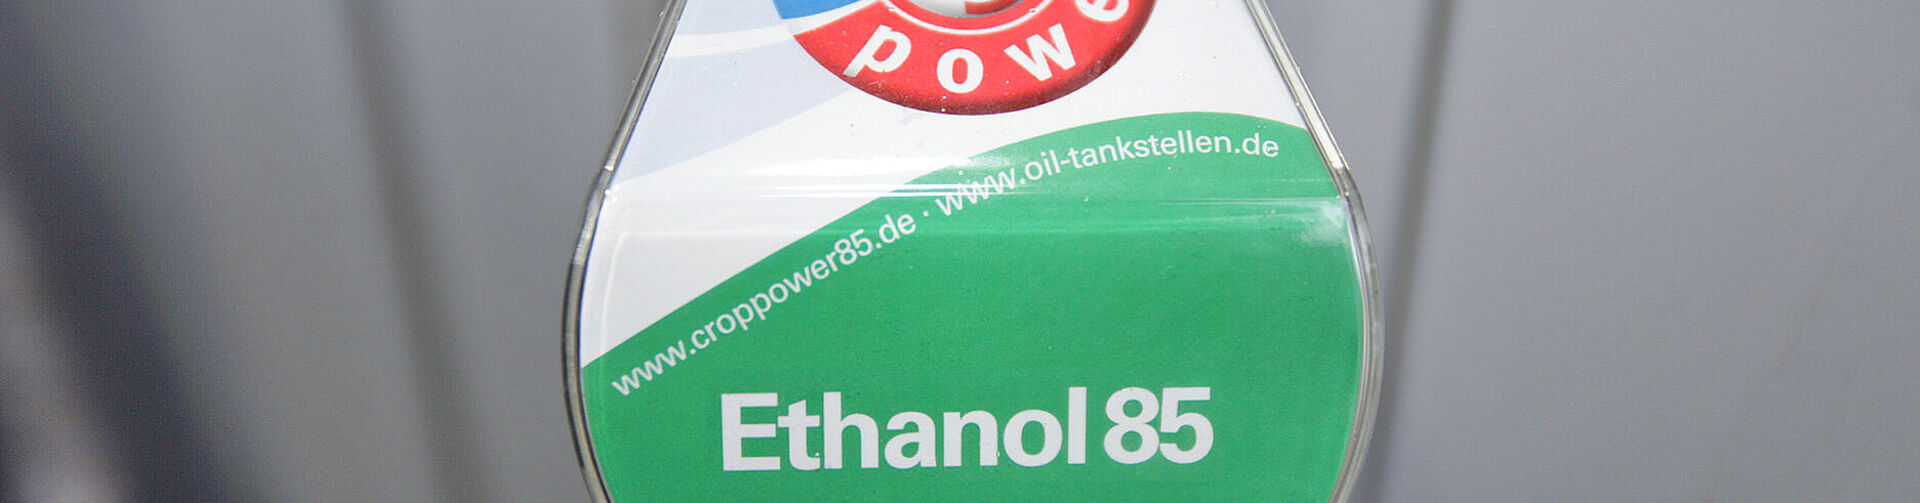 E85 an OIL!-Tankstellen in Hennef, Troisdorf und Saarlouis